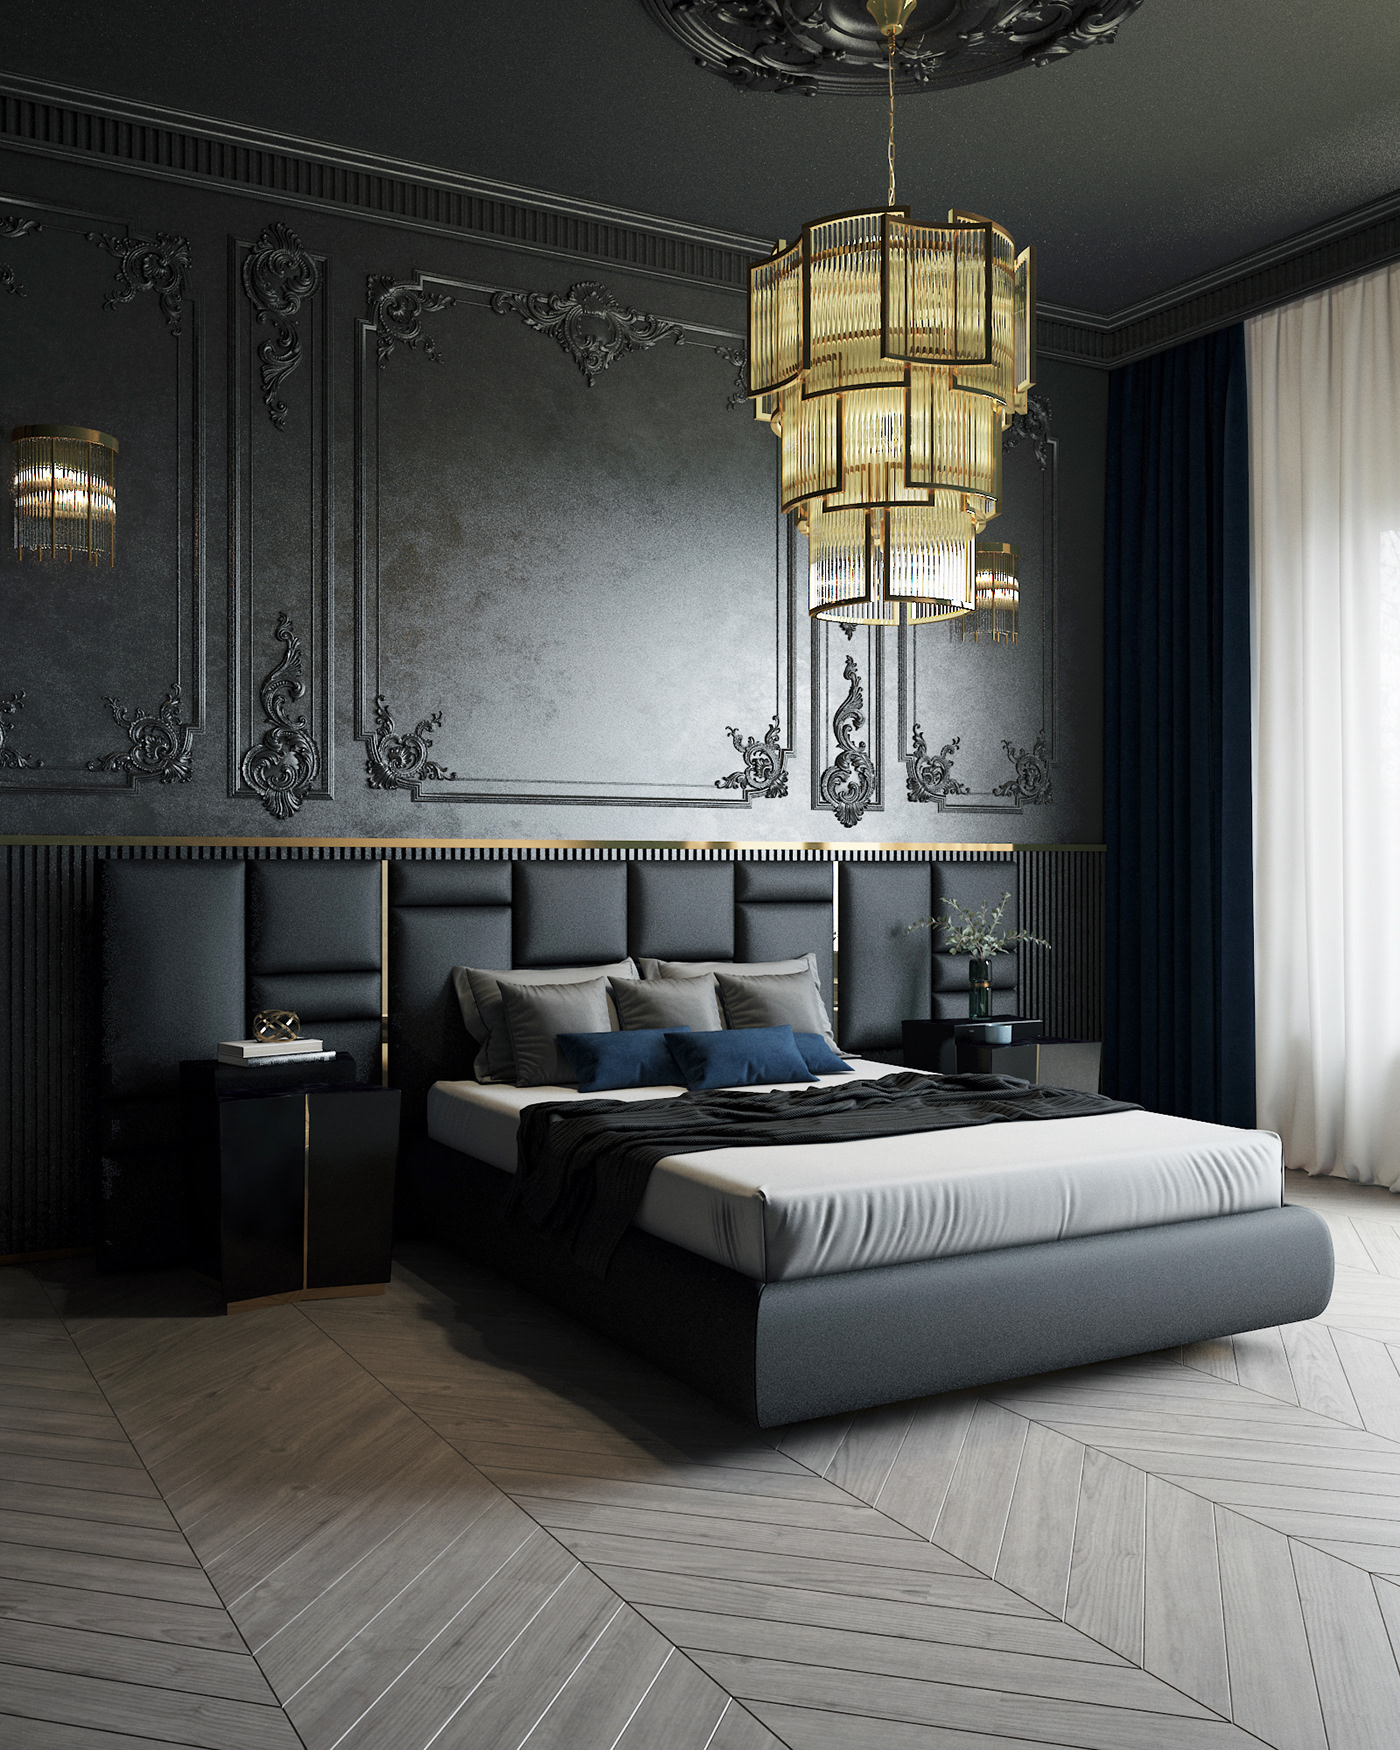 3dsmax architecture bedroom dark design Interior luxury Luxxu